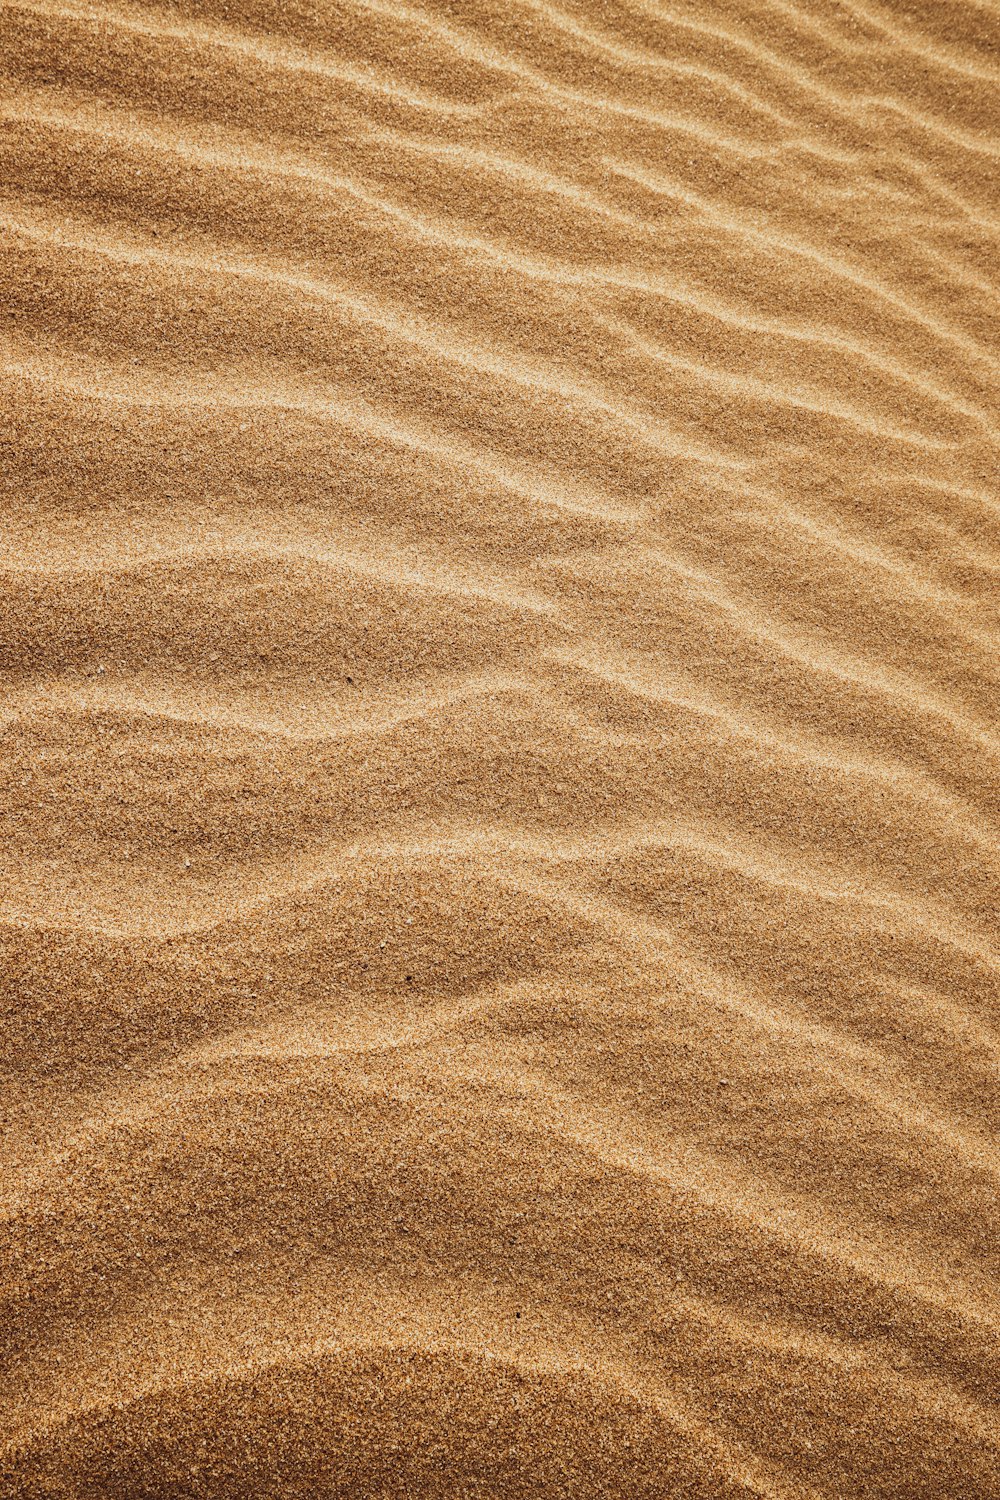 모래에 작은 파도가 있는 모래 지역